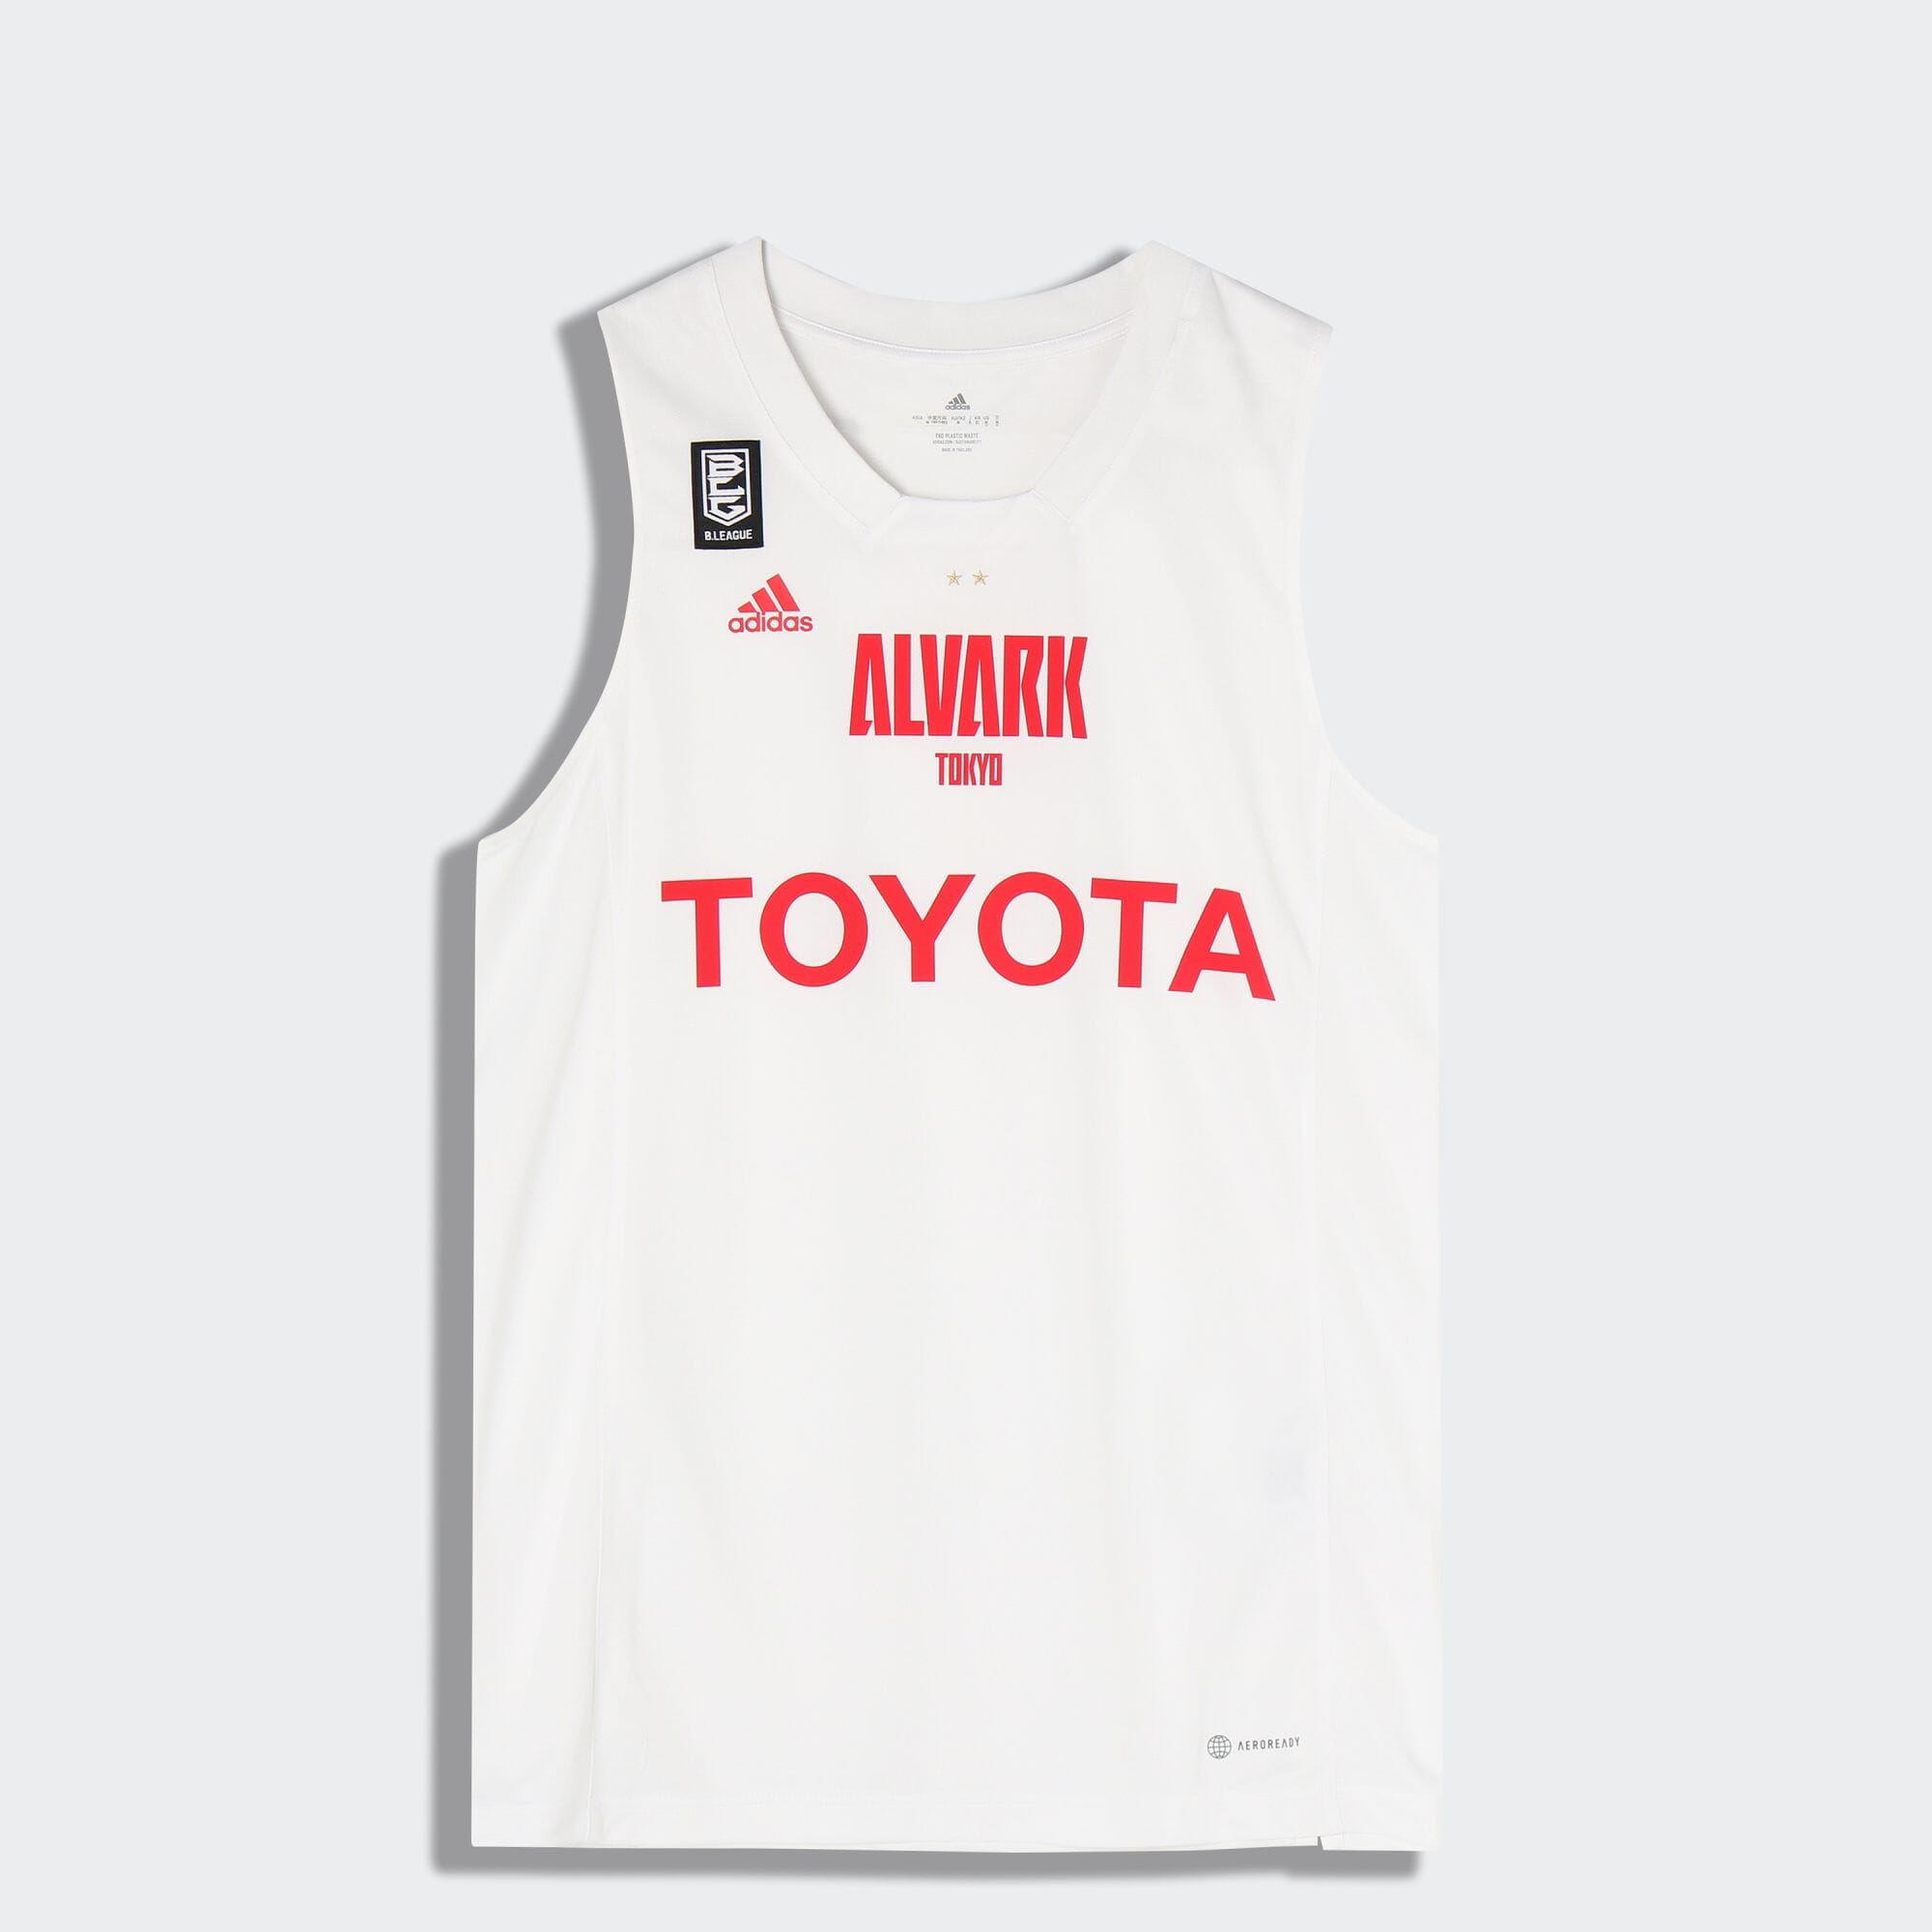 adidasアルバルク東京 ドライポロシャツOサイズバスケットボール